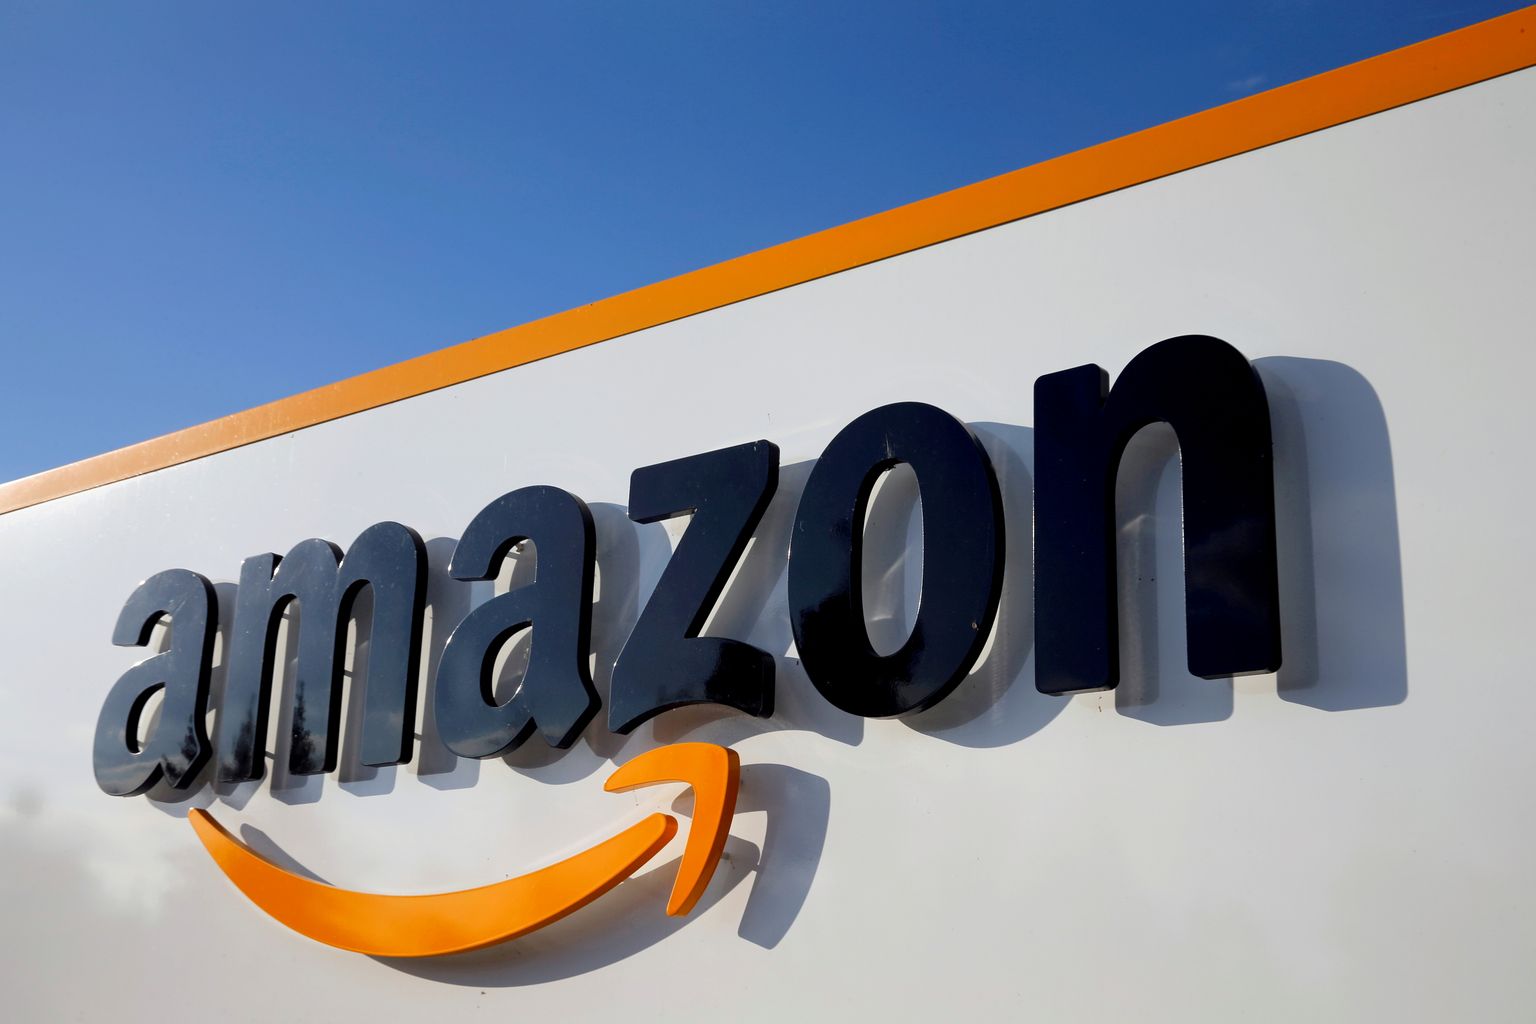 Maailma kõige väärtuslikum kaubamärk on Amazon.